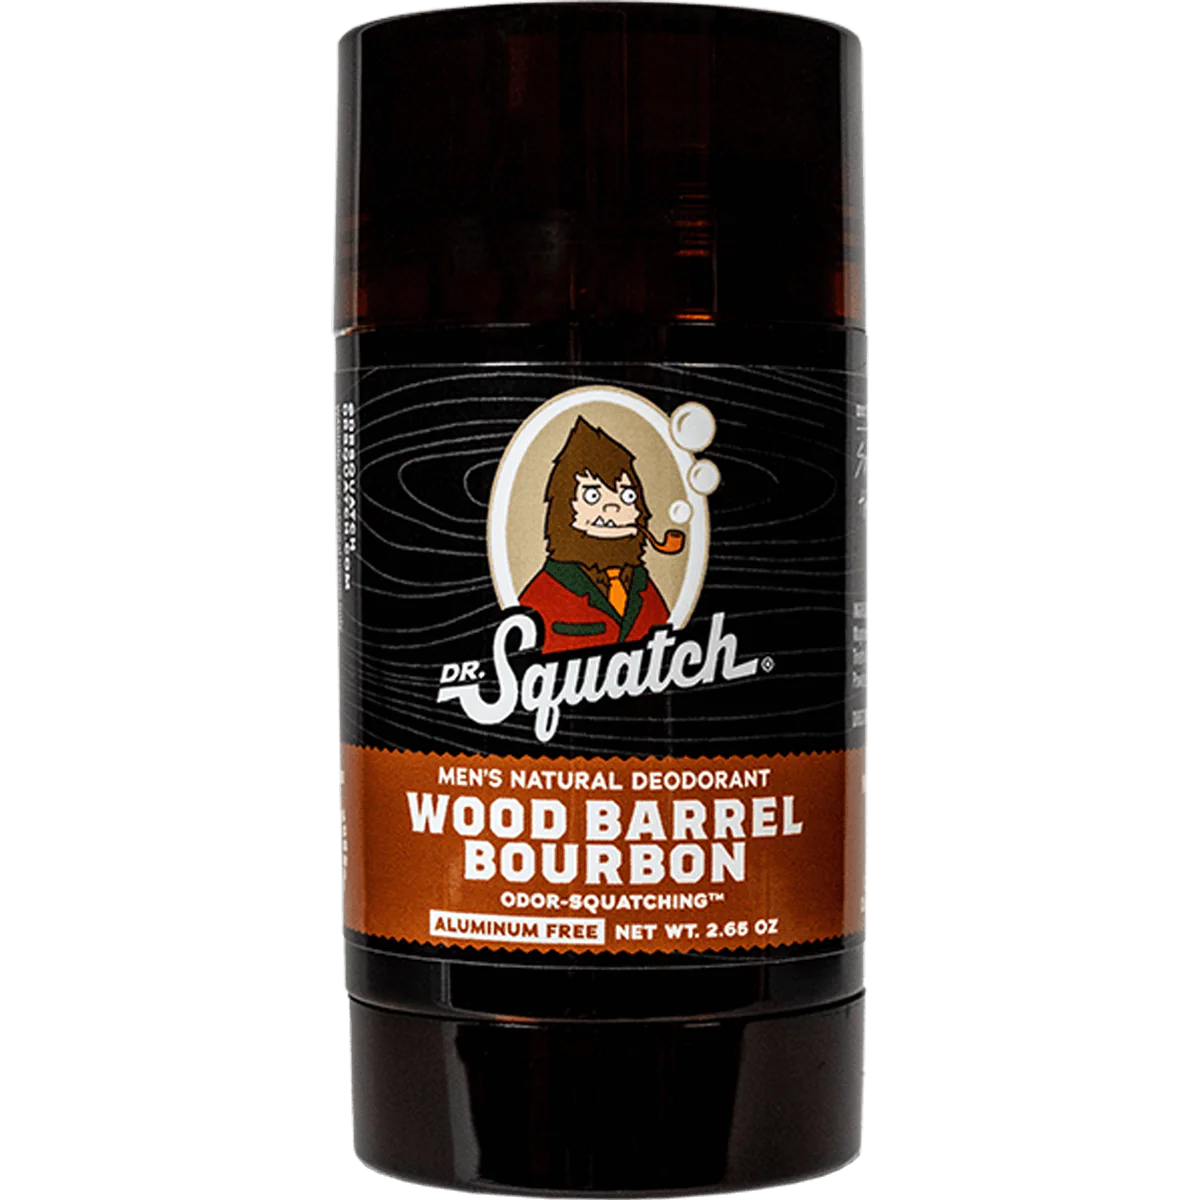 Wood Barrel Bourbon Men's Natural Deodorant